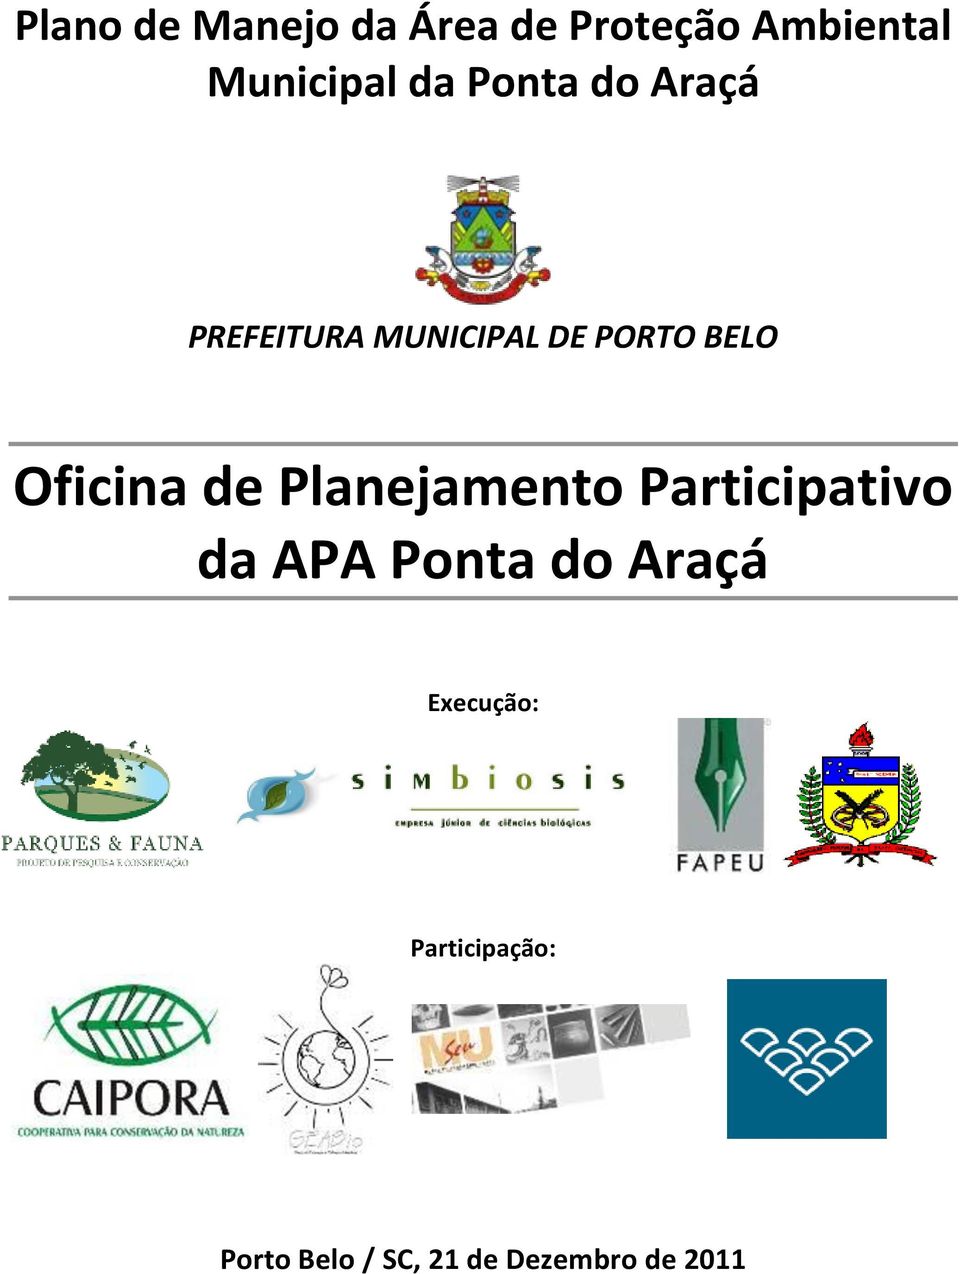 Oficina de Planejamento Participativo da APA Ponta do